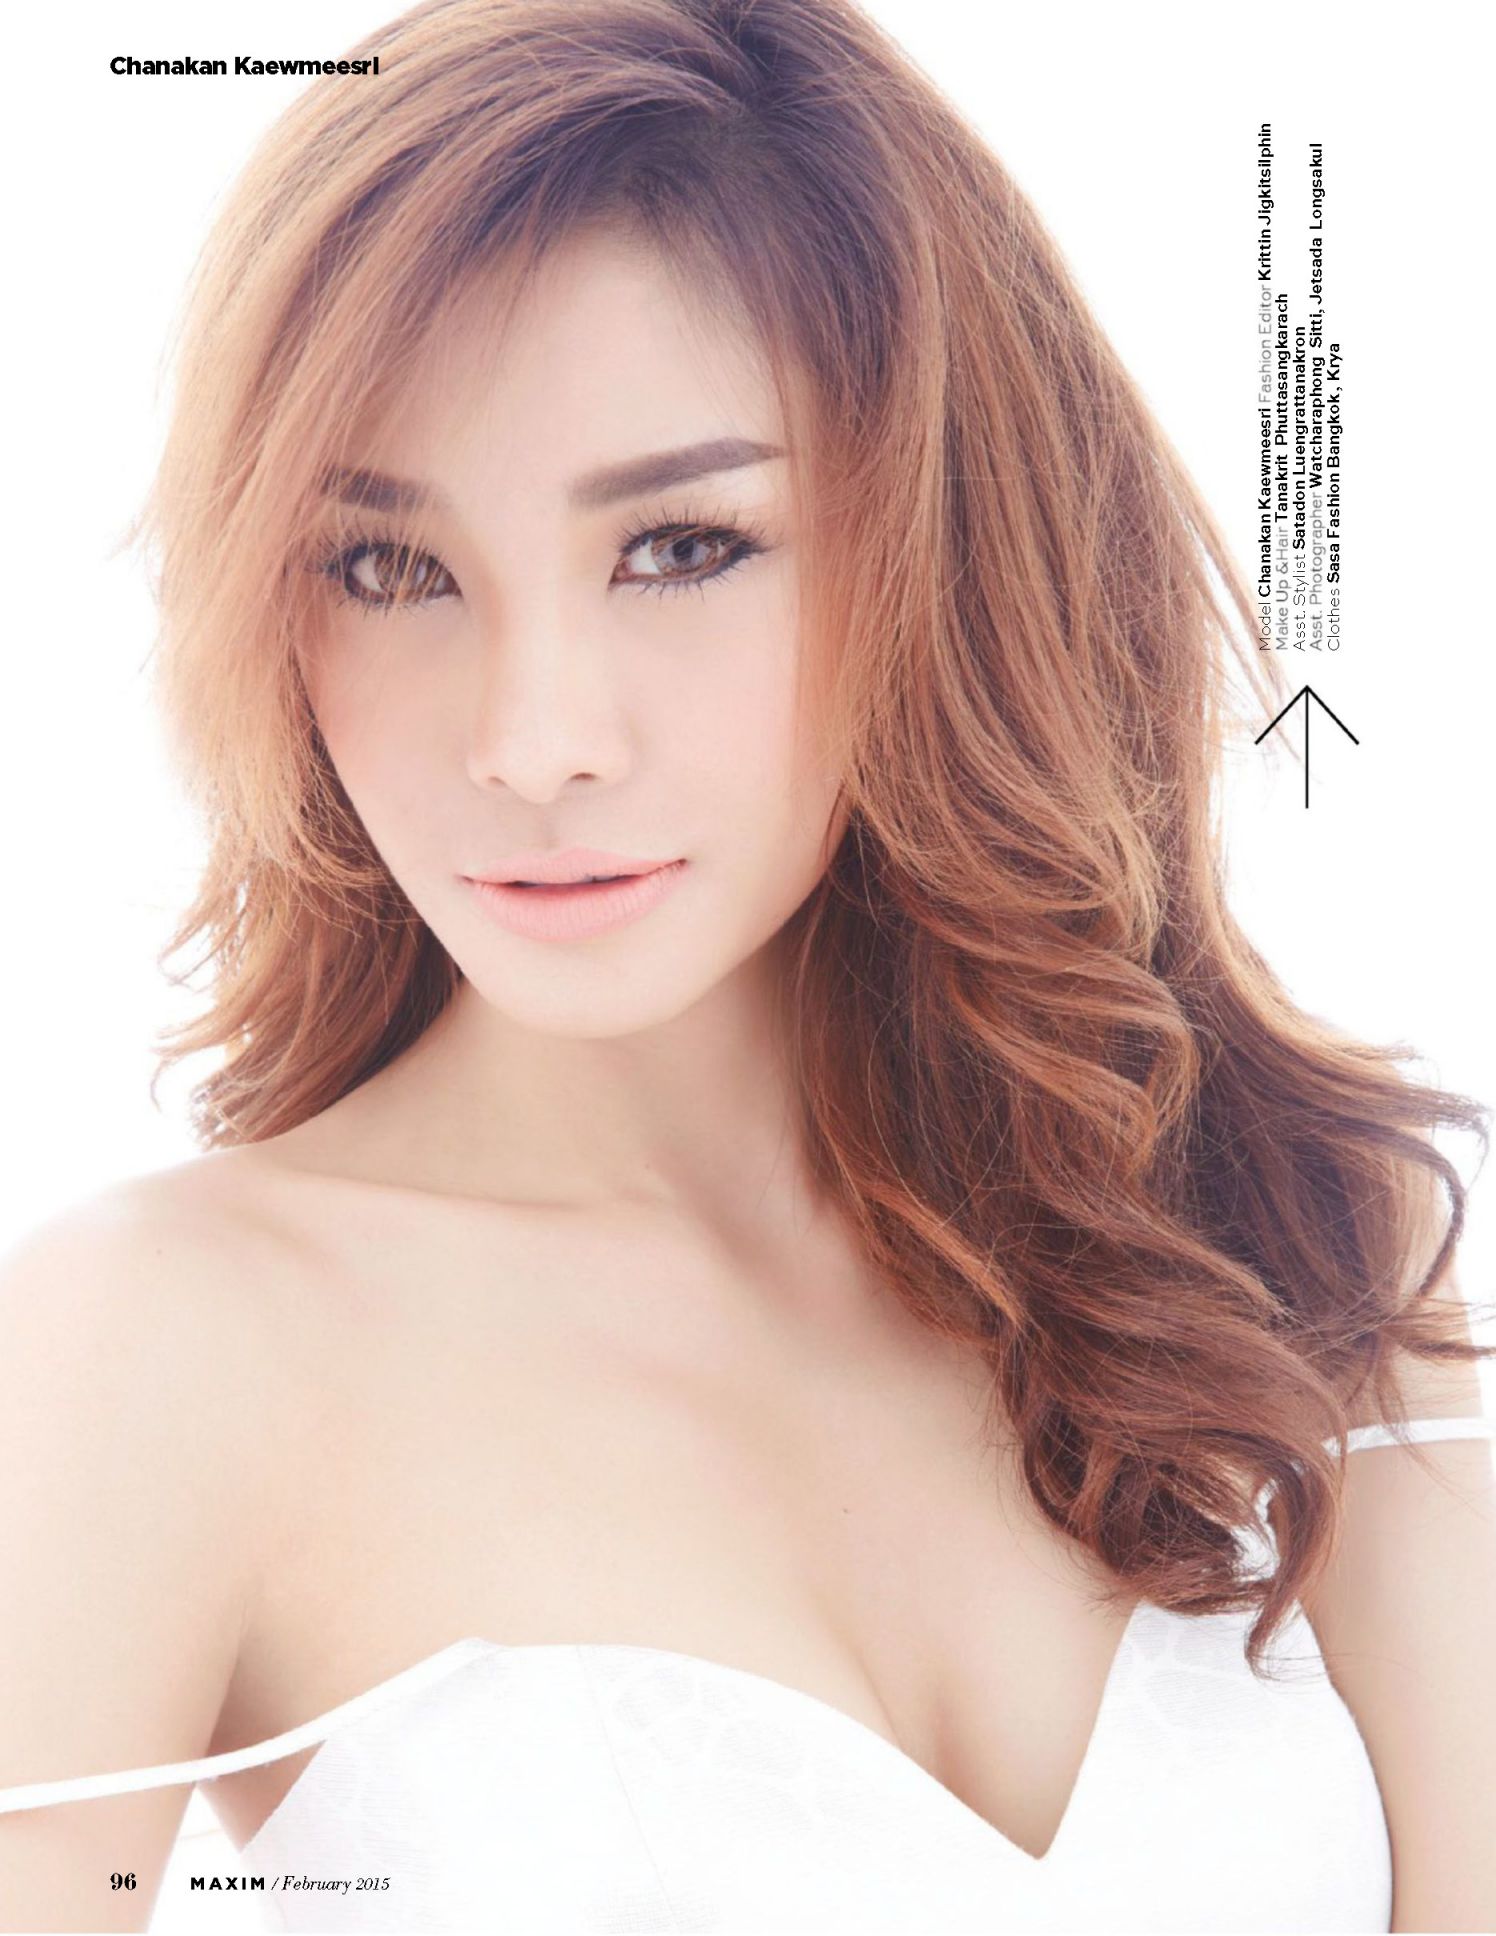 Chanakan Kaewmeesri for Maxim Magazine Thailand